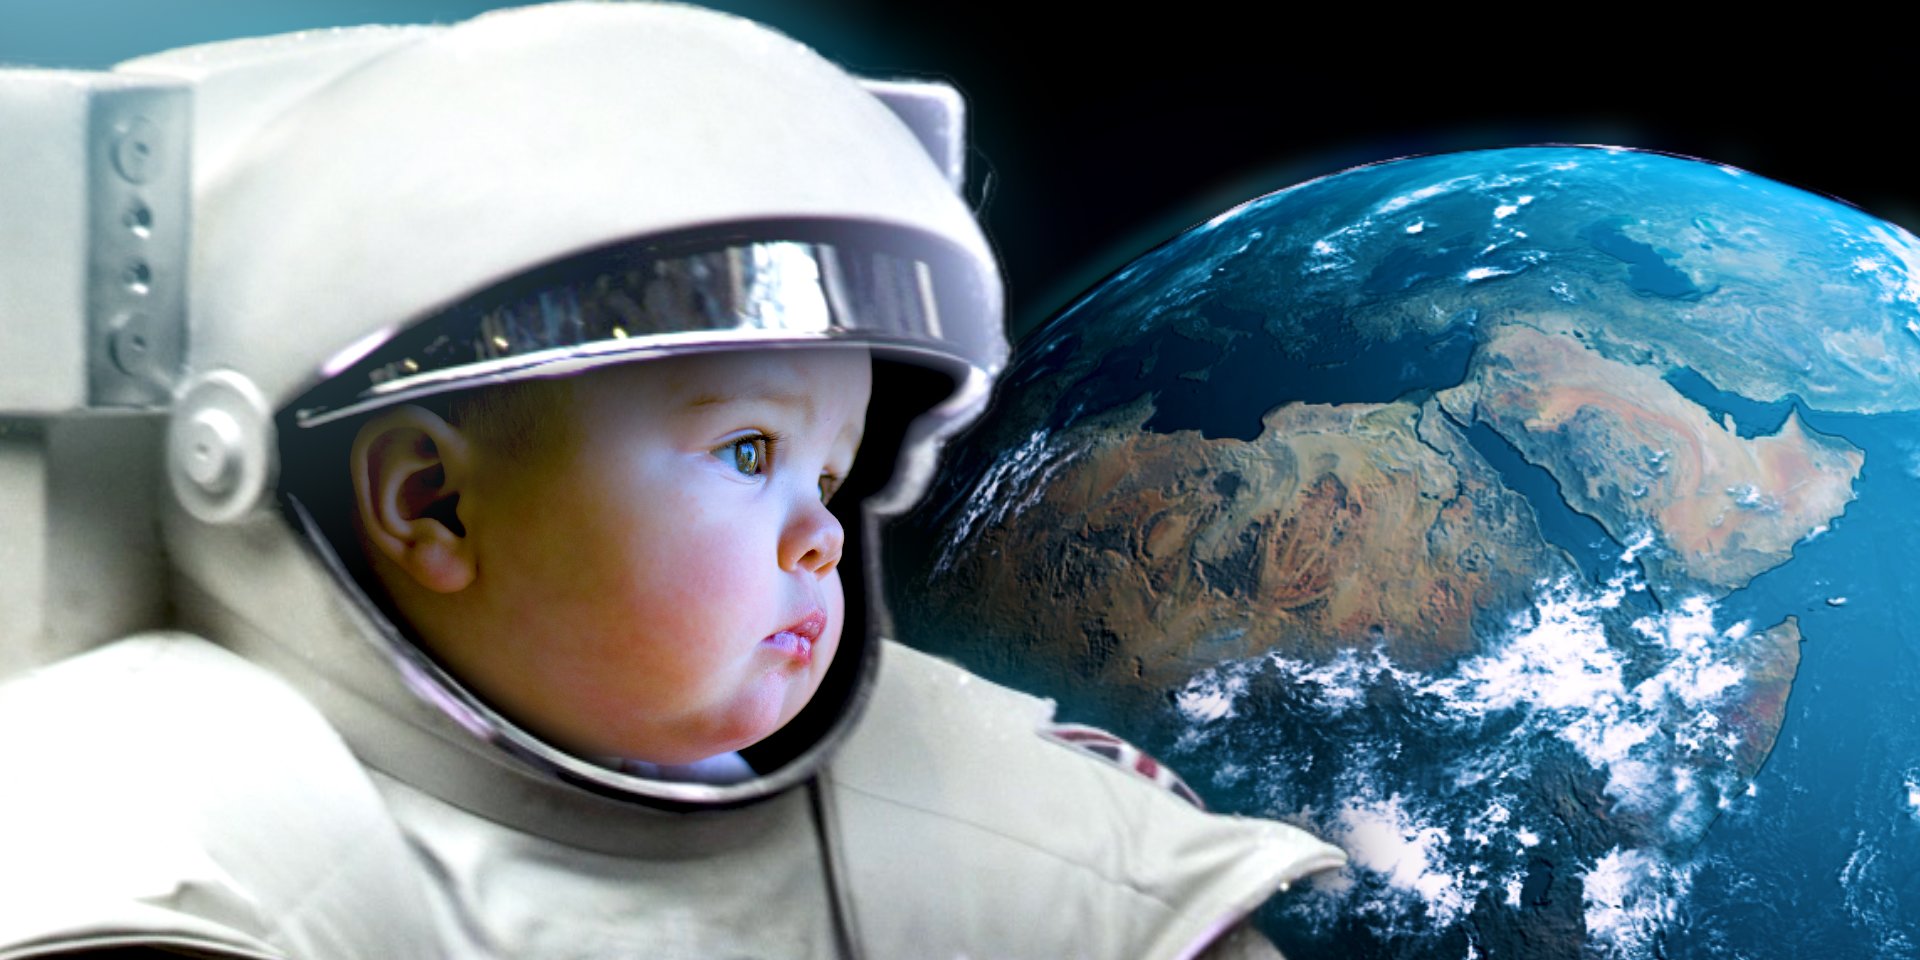 Si los humanos dieran a luz en el espacio, los bebés tendrían cabezas gigantes con forma de alienígena